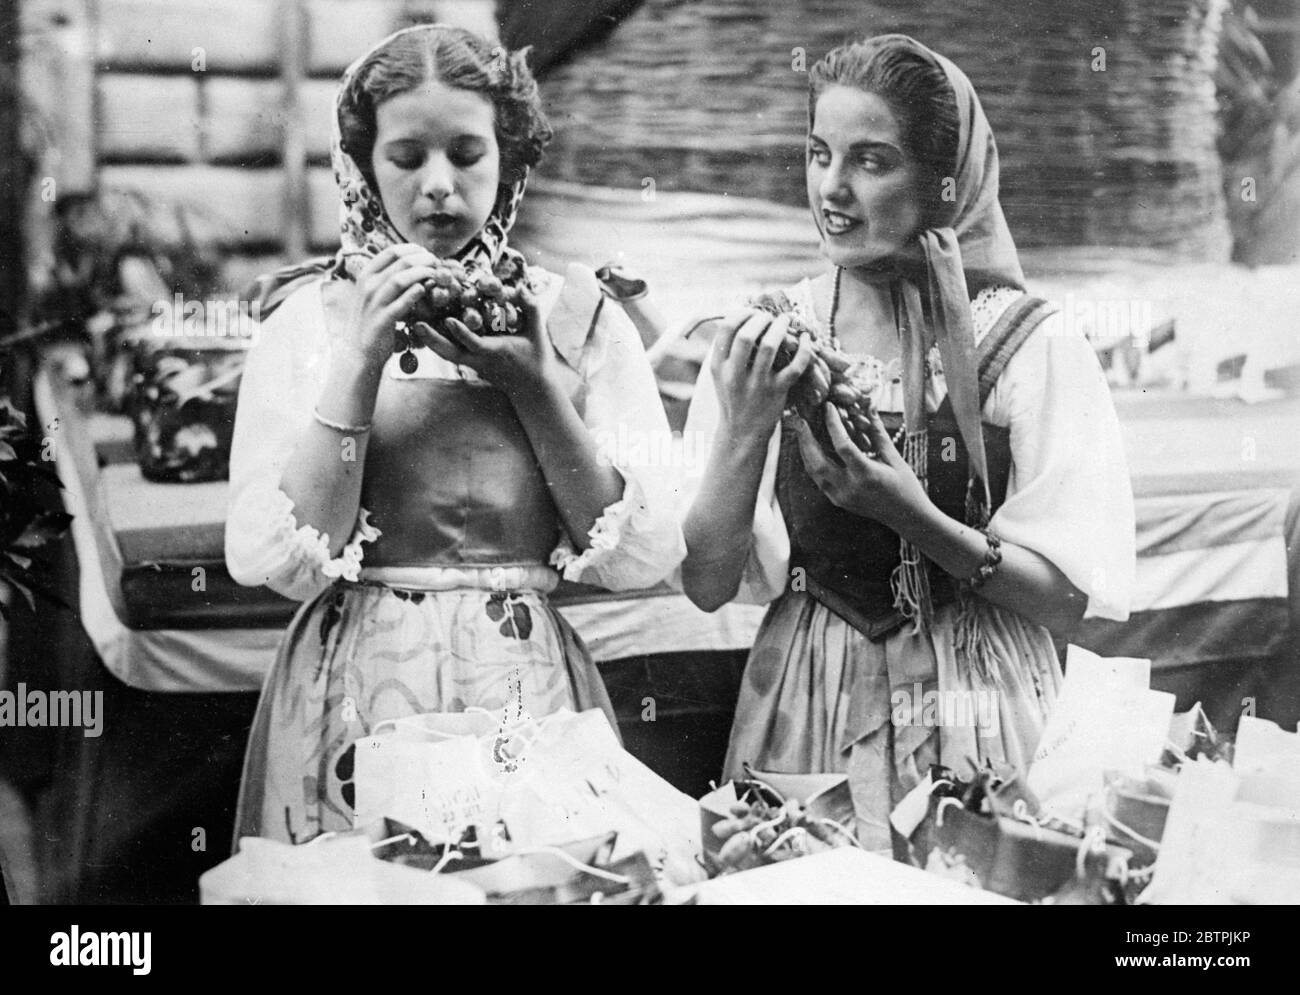 Traubenfest im Tivoli . Das traditionelle Weinfest wurde in Tivoli, in Italien gefeiert. Foto zeigt zwei Mädchen in traditioneller Kleidung mit Trauben. September 1934 Stockfoto